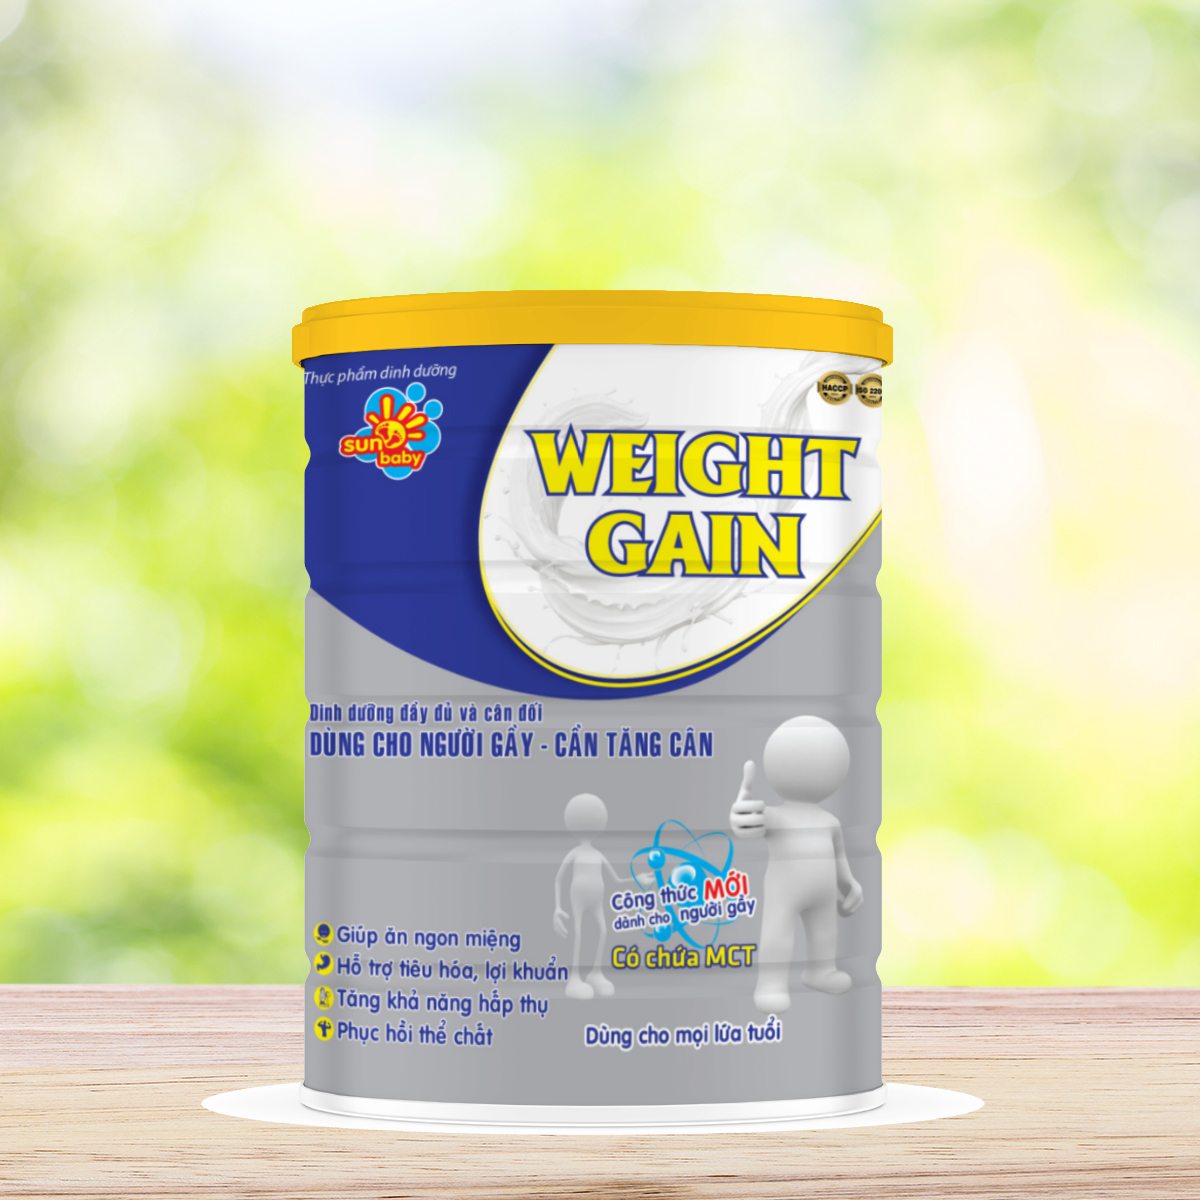 Sữa bột Sunbaby WEIGHT GAIN dinh dưỡng dành cho người gầy cần tăng cân 900G_Sunbaby Weigh gain SWG113